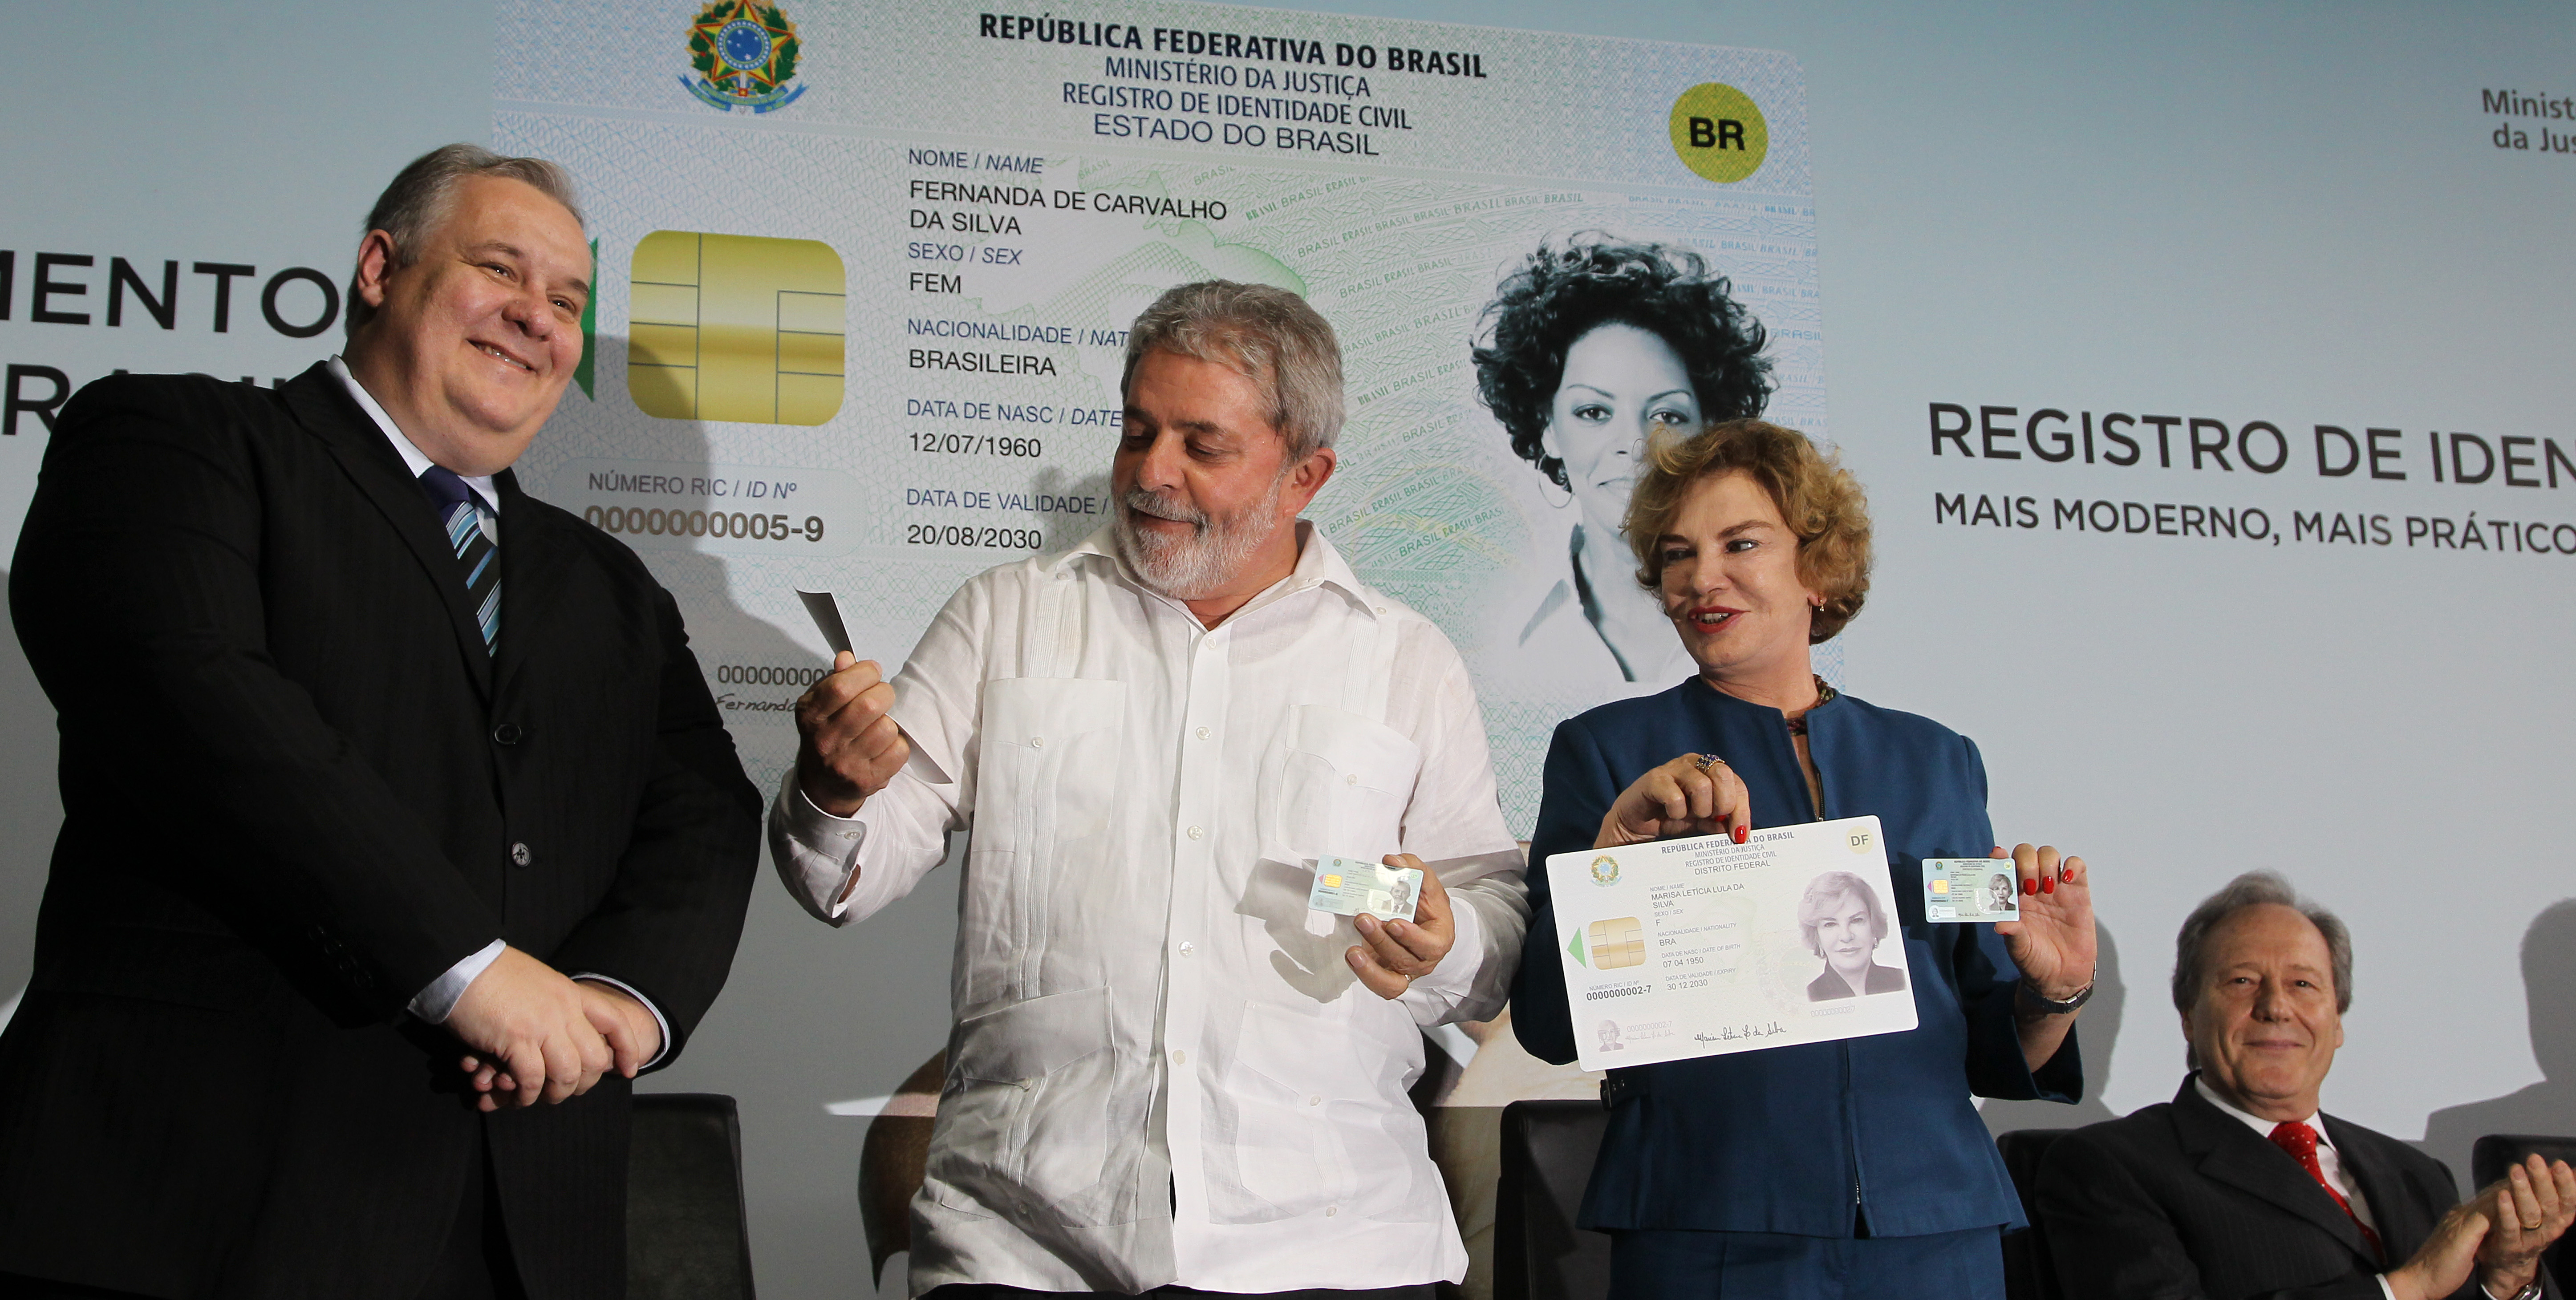 Presidente Lula, dona Marisa e o ministro da Justiça, Luiz Paulo Barreto, durante cerimônia de lançamento do novo Registro de Identidade Civil (RIC) e posse do Conselho Nacional de Segurança Pública (CONASP)